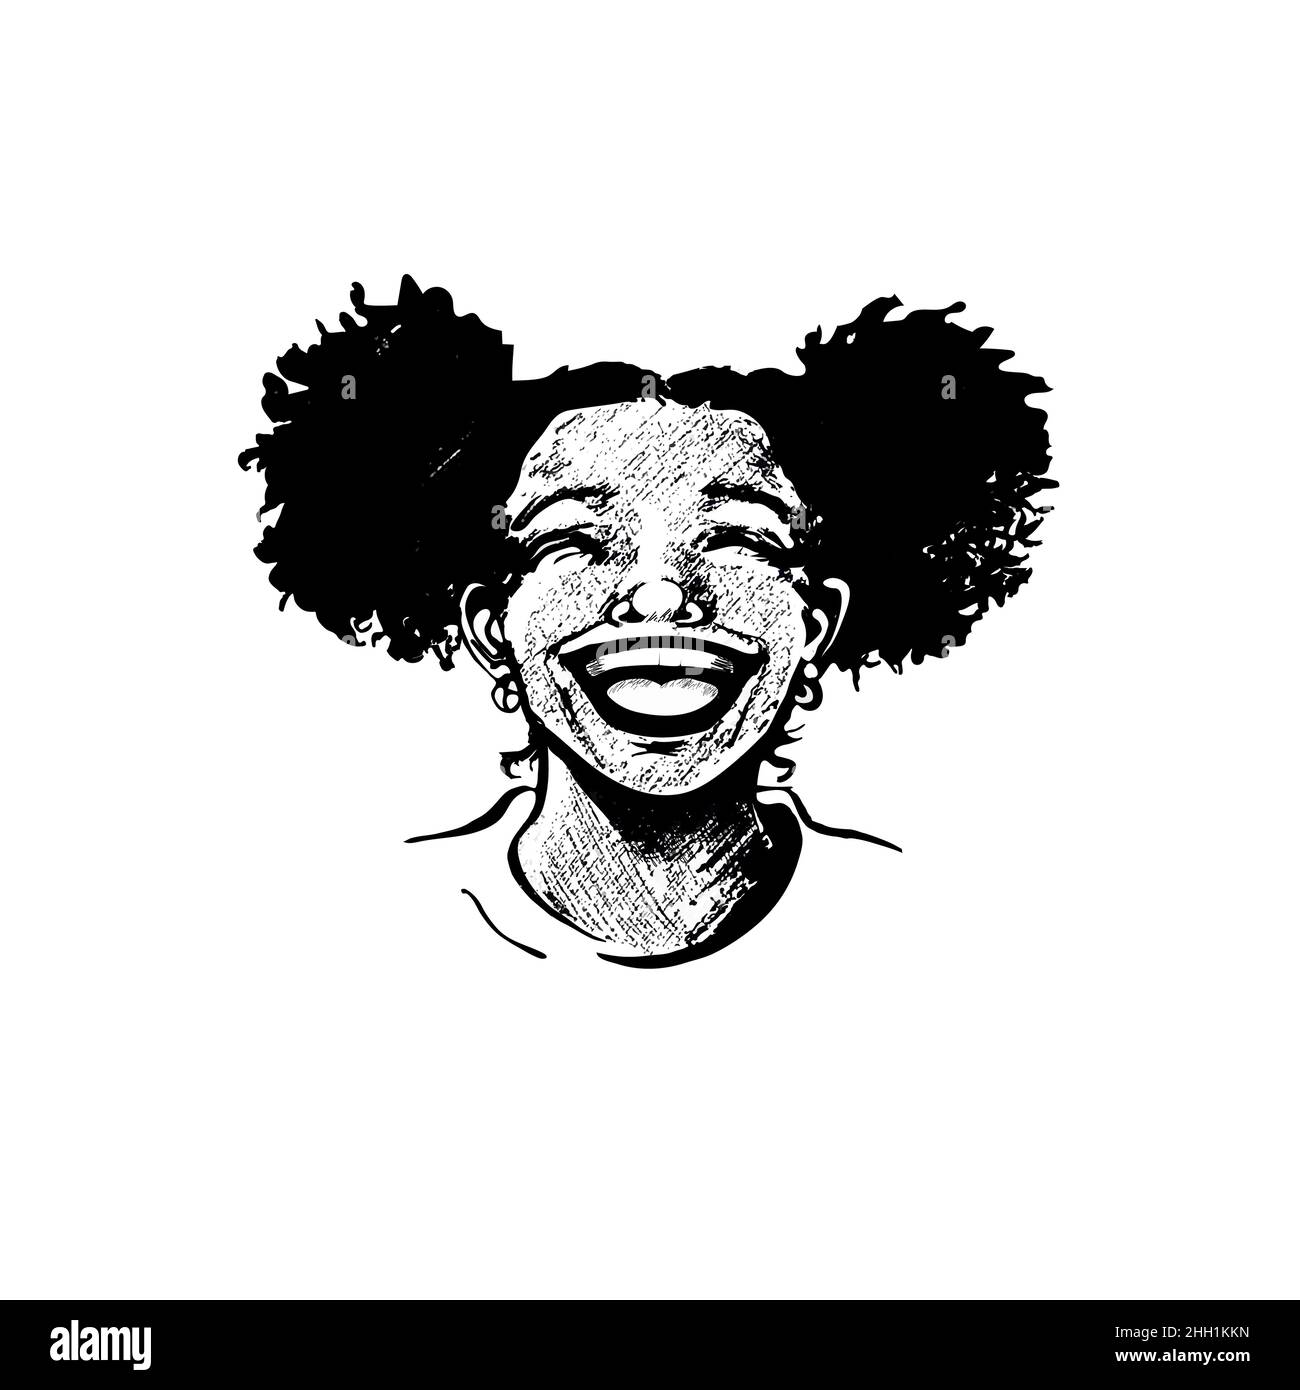 Linda mujer joven afroamericana, adolescente, riéndose de corazón, labios abiertos, brillantes dientes, pelo rizado en las lechuzas. Retrato realista dibujado a mano Ilustración del Vector